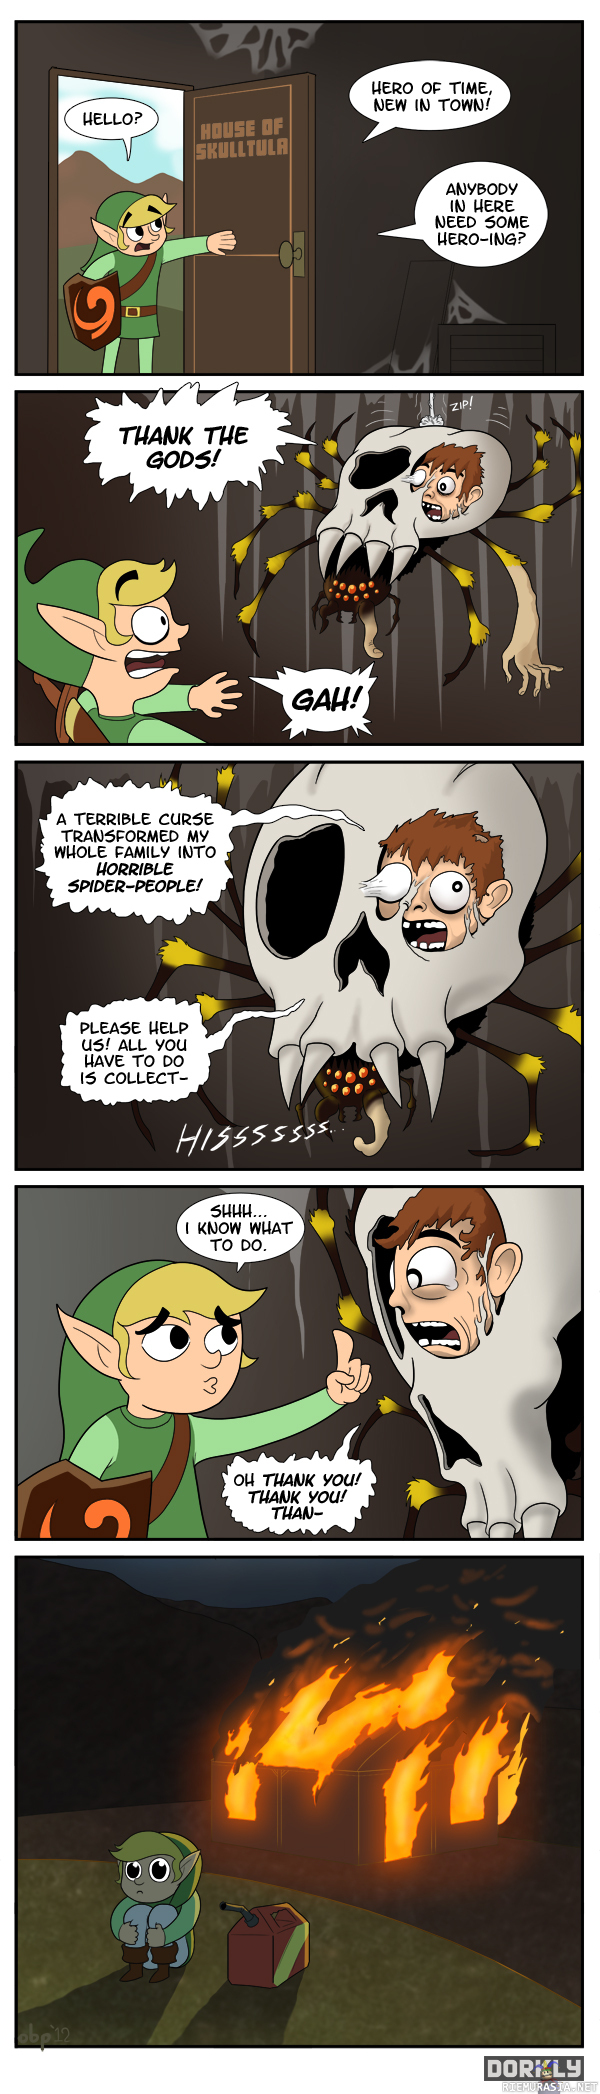 Link as a hero